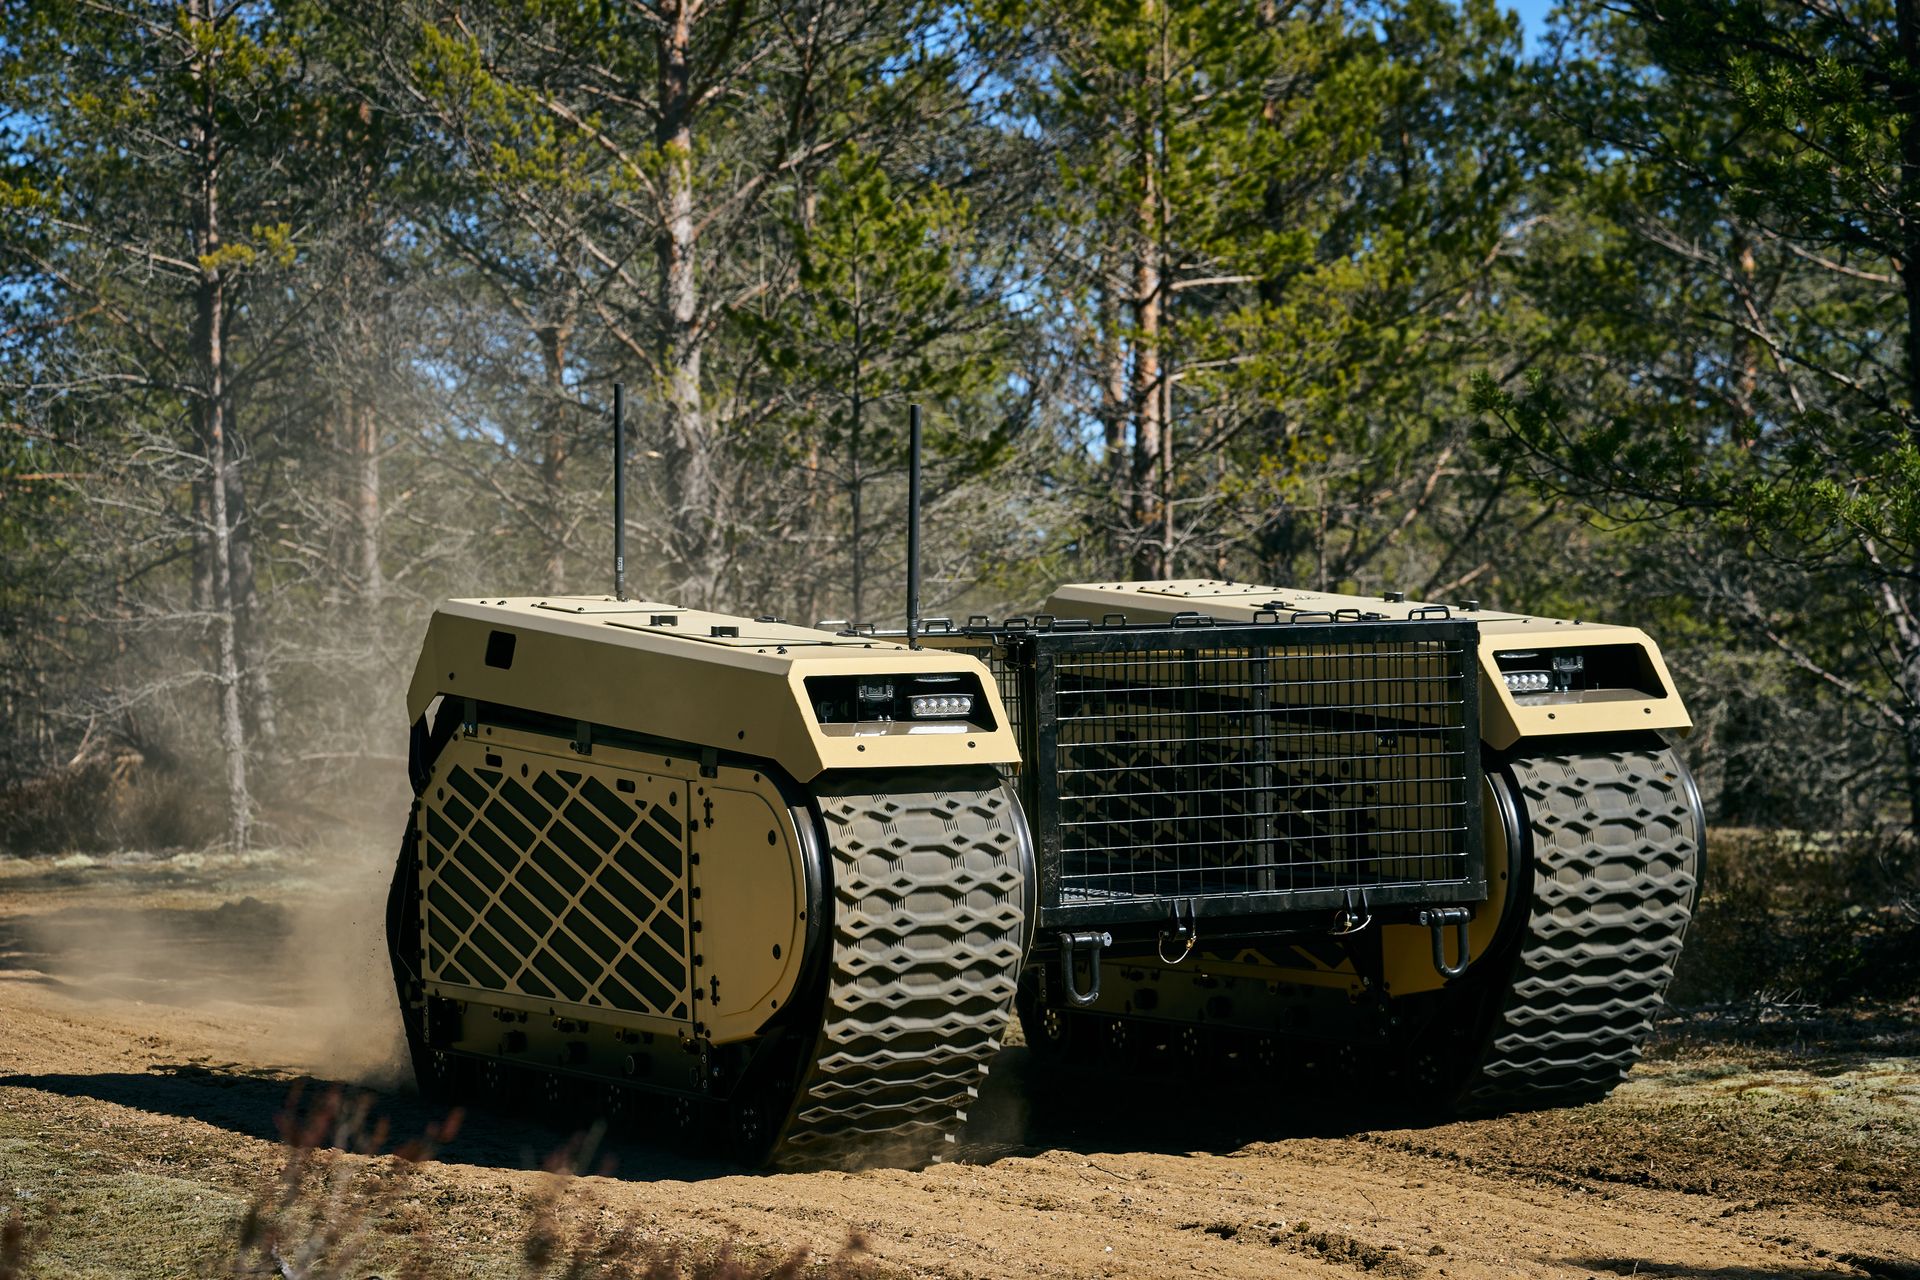 Пета генерација тенкова Тхемис УГВ компаније Милрем Роботицс описана је као „вишенаменско возило на гусеничарима“, које може бити опремљено разним технологијама за борбу као што су системи оружја, привезани дронови и ИЕД уређаји за детекцију